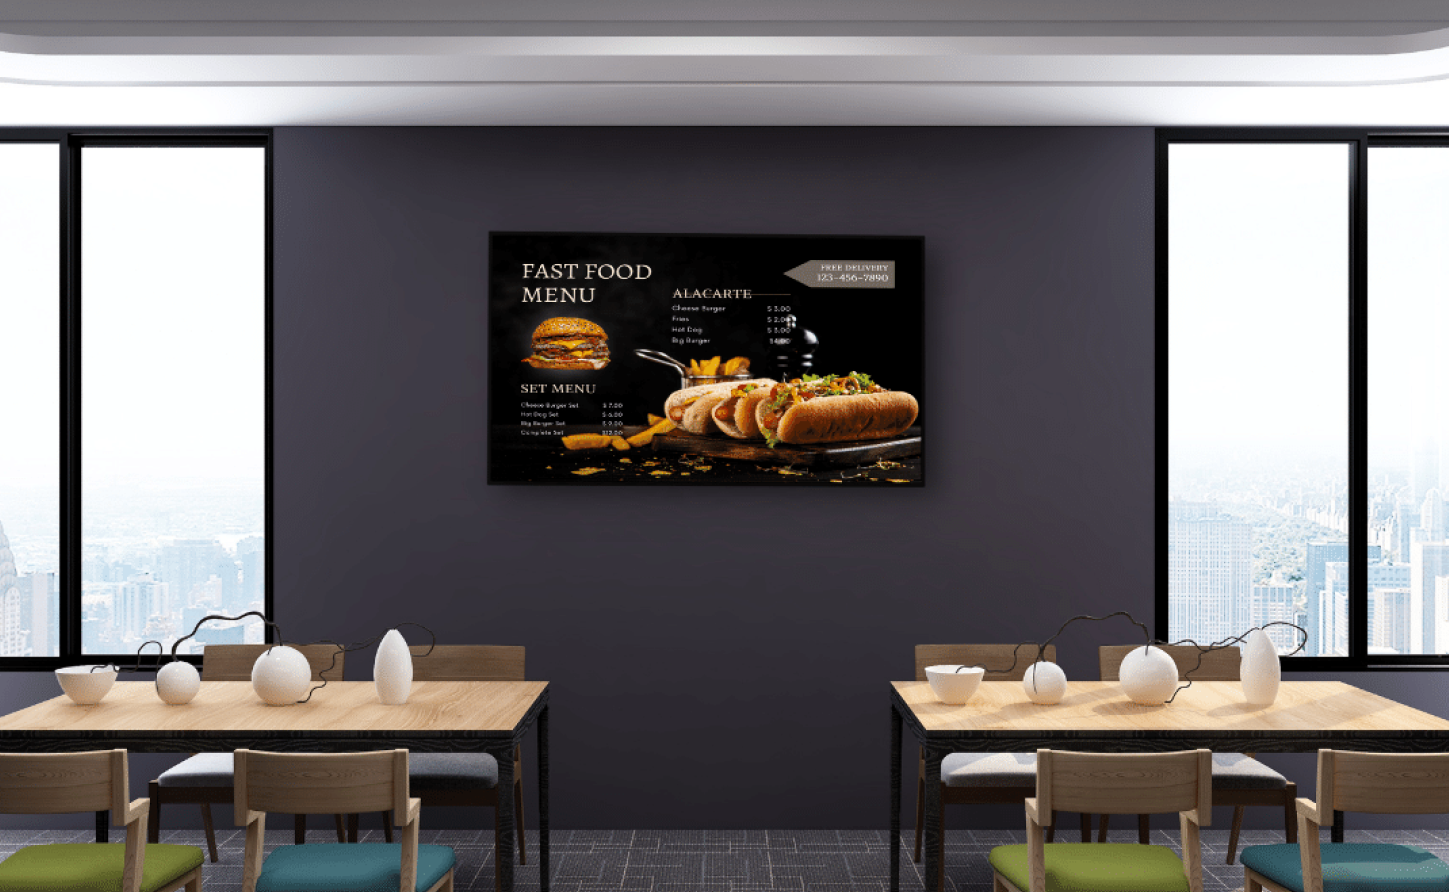 Digital Signage for Quick Service Restaurants